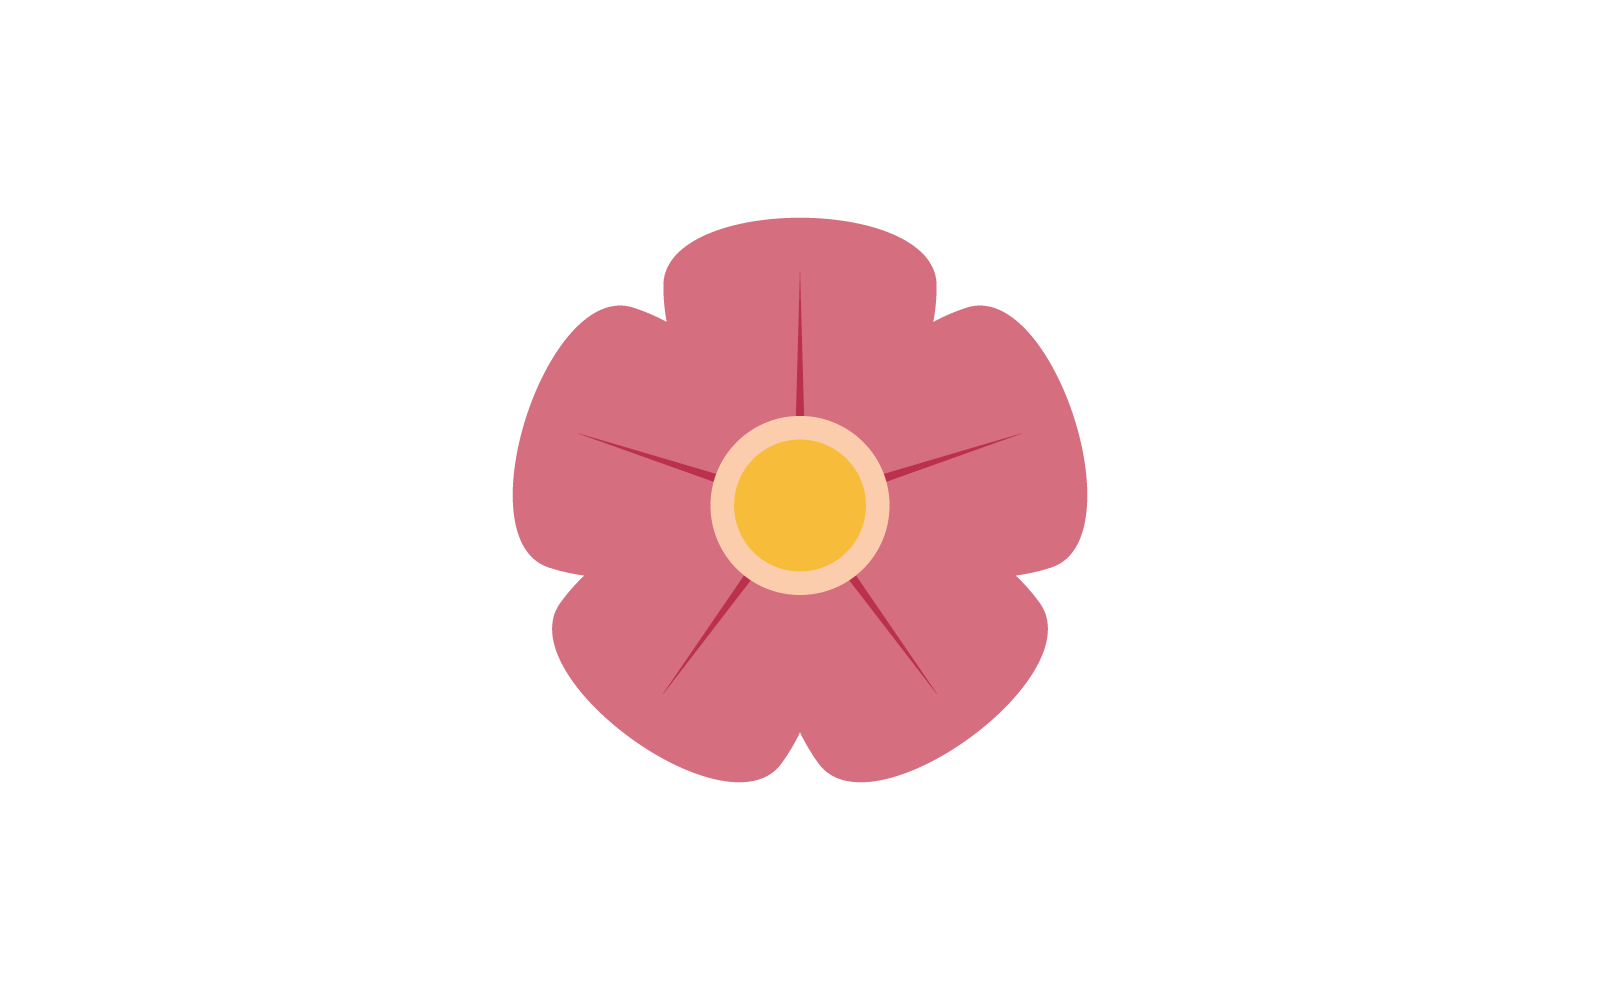 Plumeria flower logo illustration template